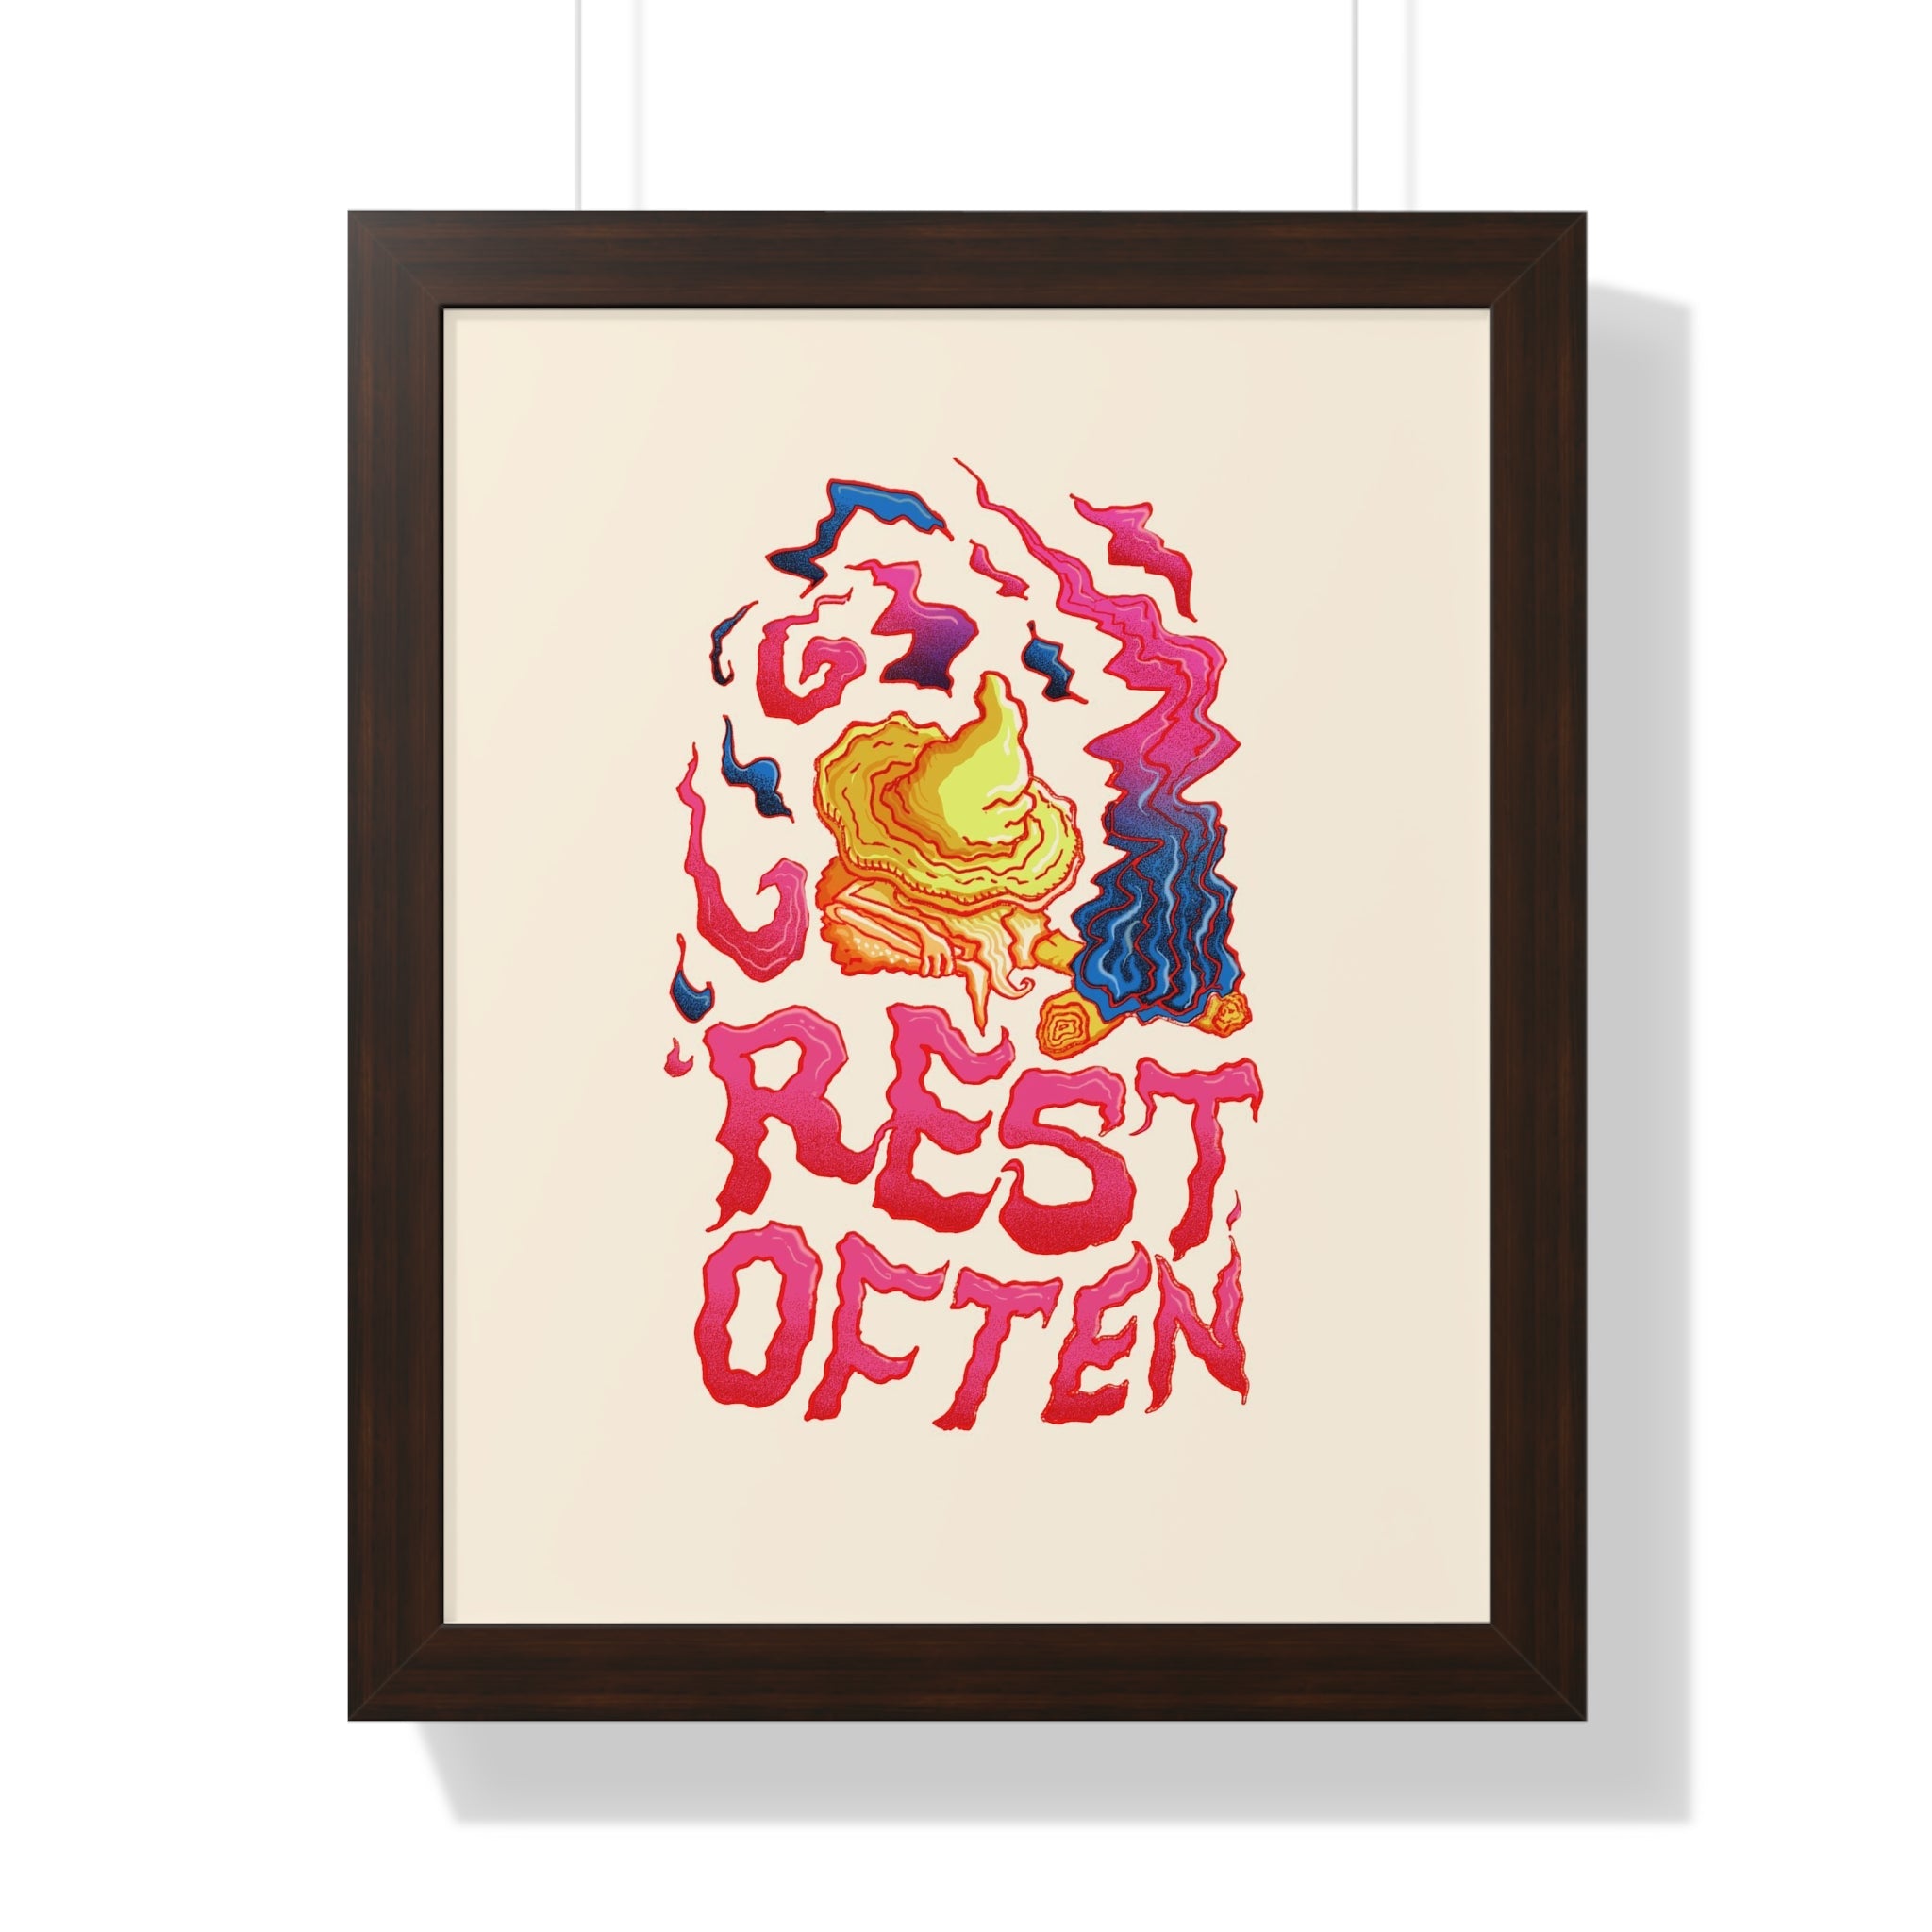 Rest Often | Framed Poster - Poster - Ace of Gnomes - 72532913756276577805